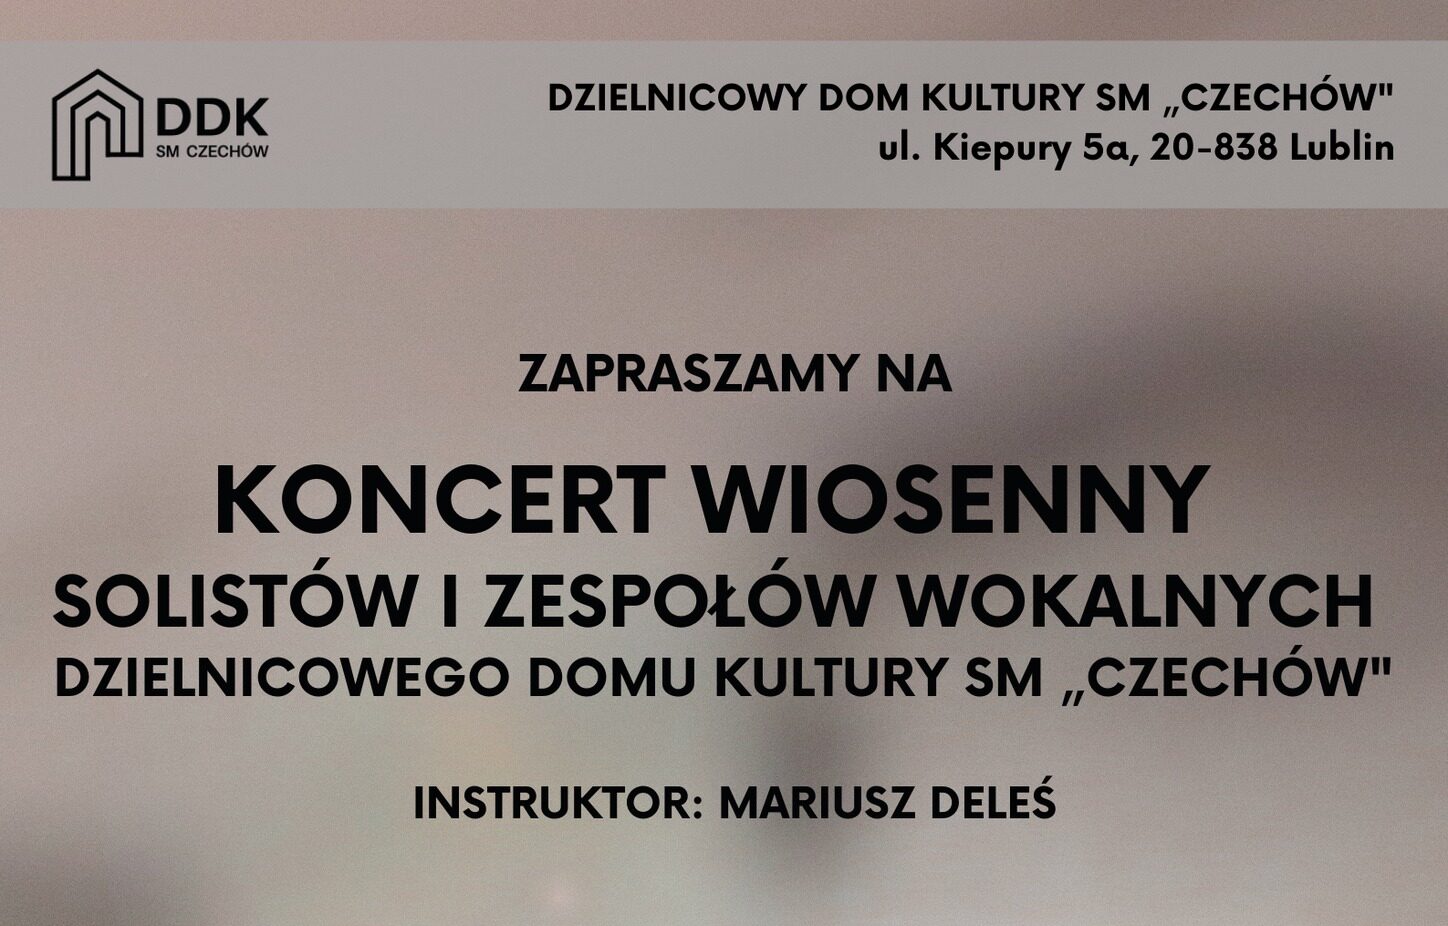 Koncert Wiosenny solistów i zespołów wokalnych z DDK SM „Czechów”